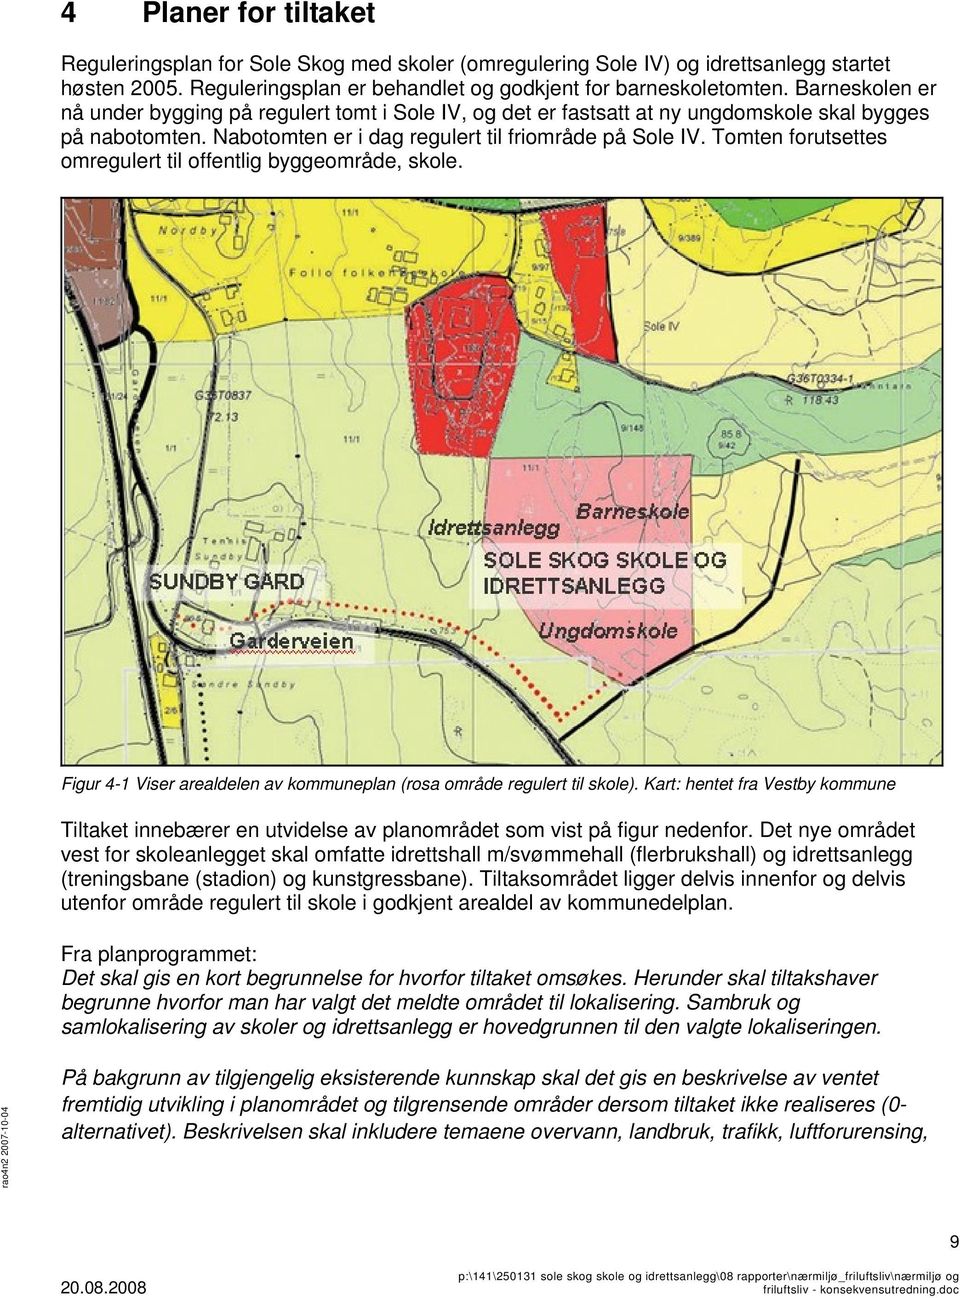 Tomten forutsettes omregulert til offentlig byggeområde, skole. Figur 4-1 Viser arealdelen av kommuneplan (rosa område regulert til skole).